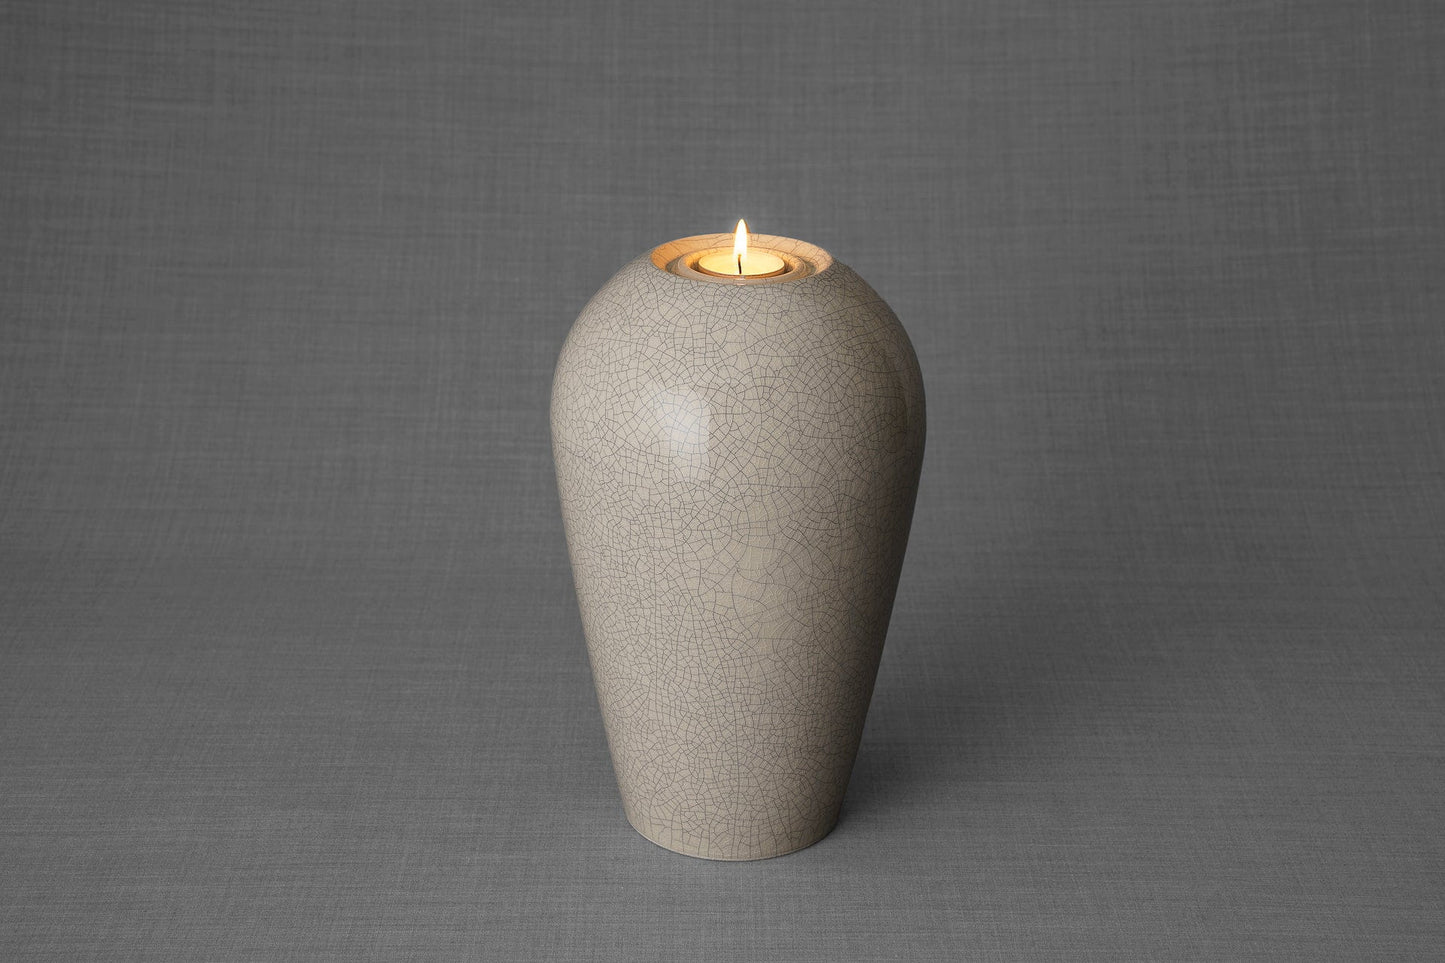 Pulvis Art Urns Adult Size Urn Memorial Cremation Urn "Serenity" - Large | Craquelure | Ceramic